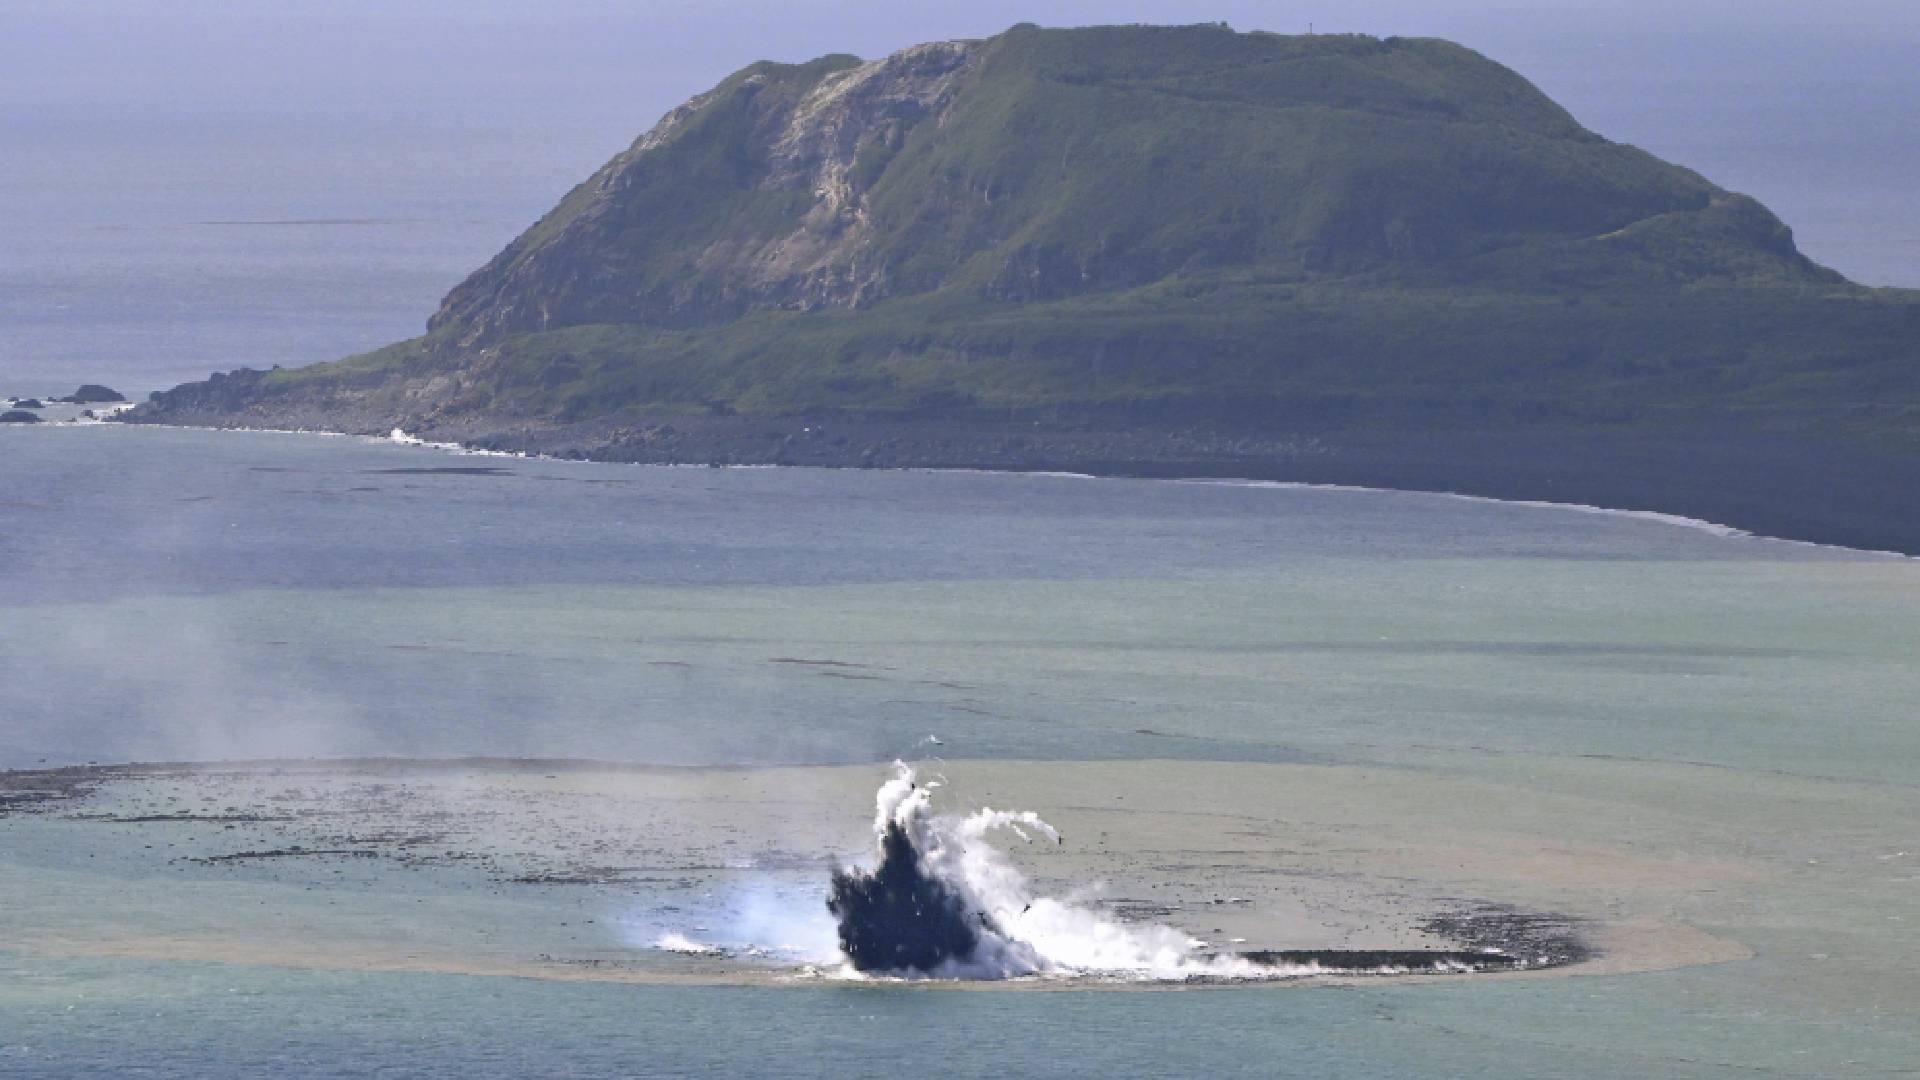 Poblíž Iwodžimy se z moře vynořil nový ostrov. V pozadí hora Suribači, o kterou sváděli Američané na jaře 1945 tvrdé boje s Japonci